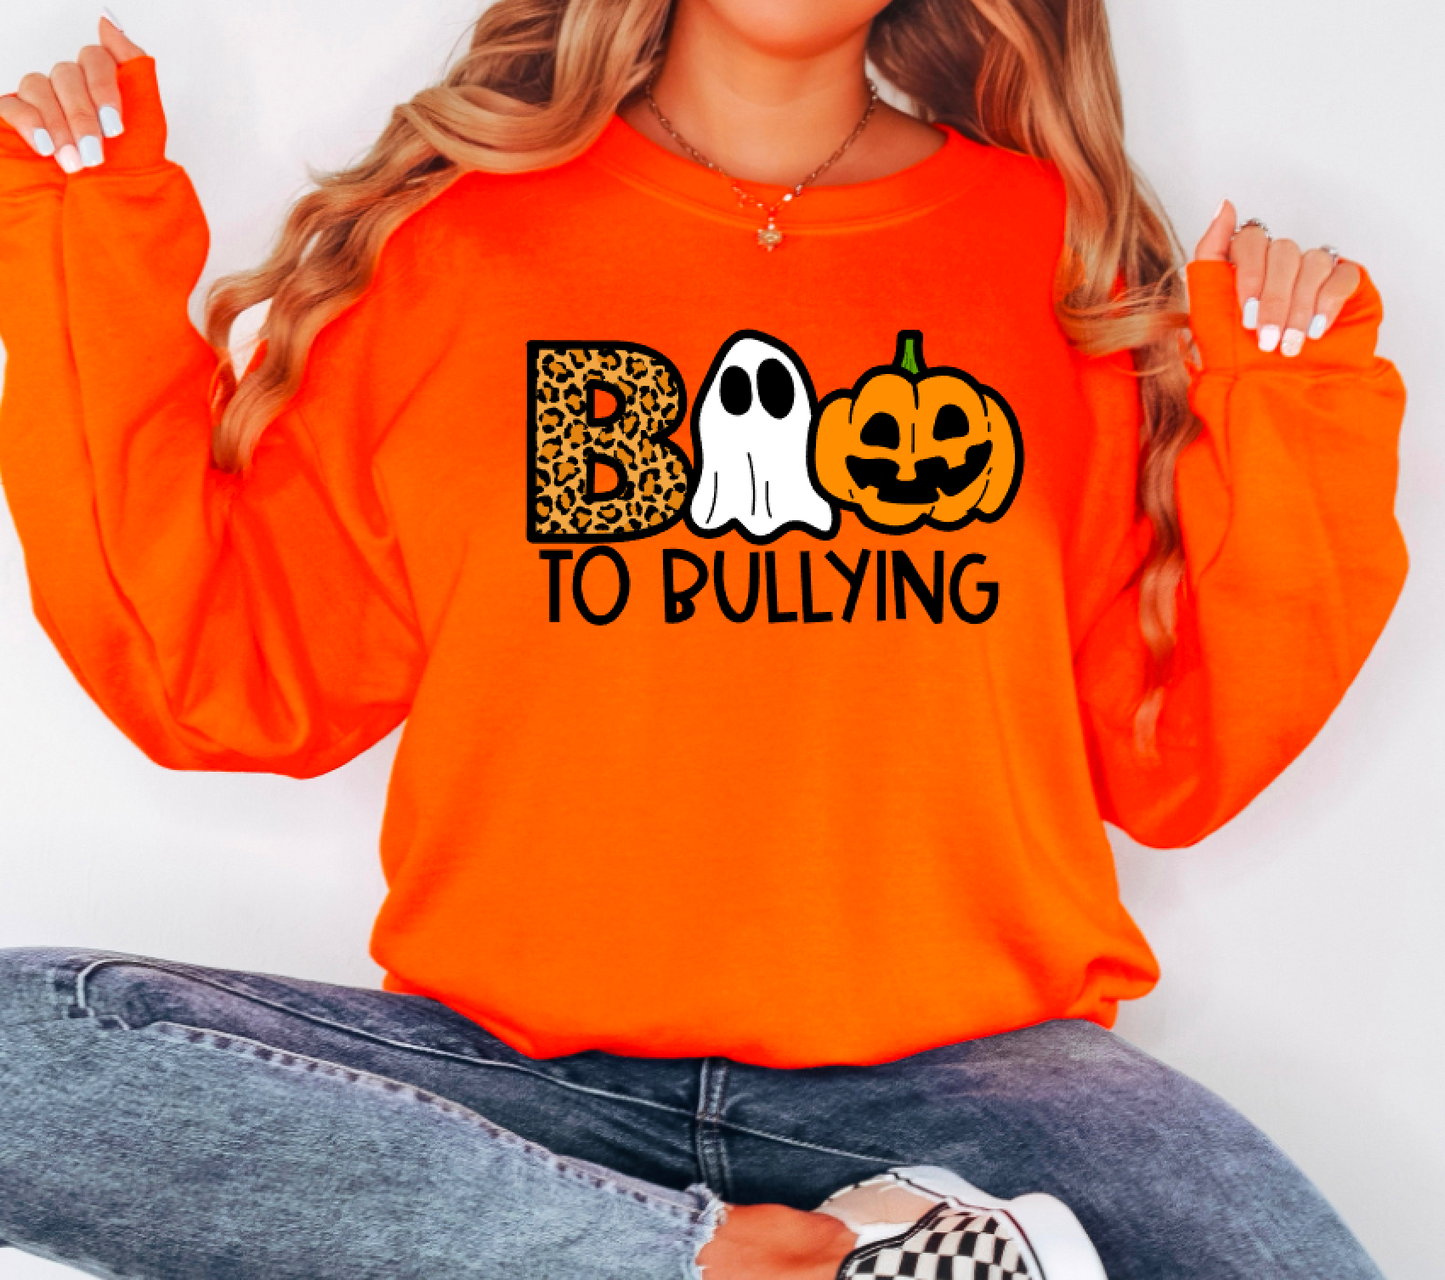 BOO to Bullying || Leopard Halloween Shirt or Sweatshirt